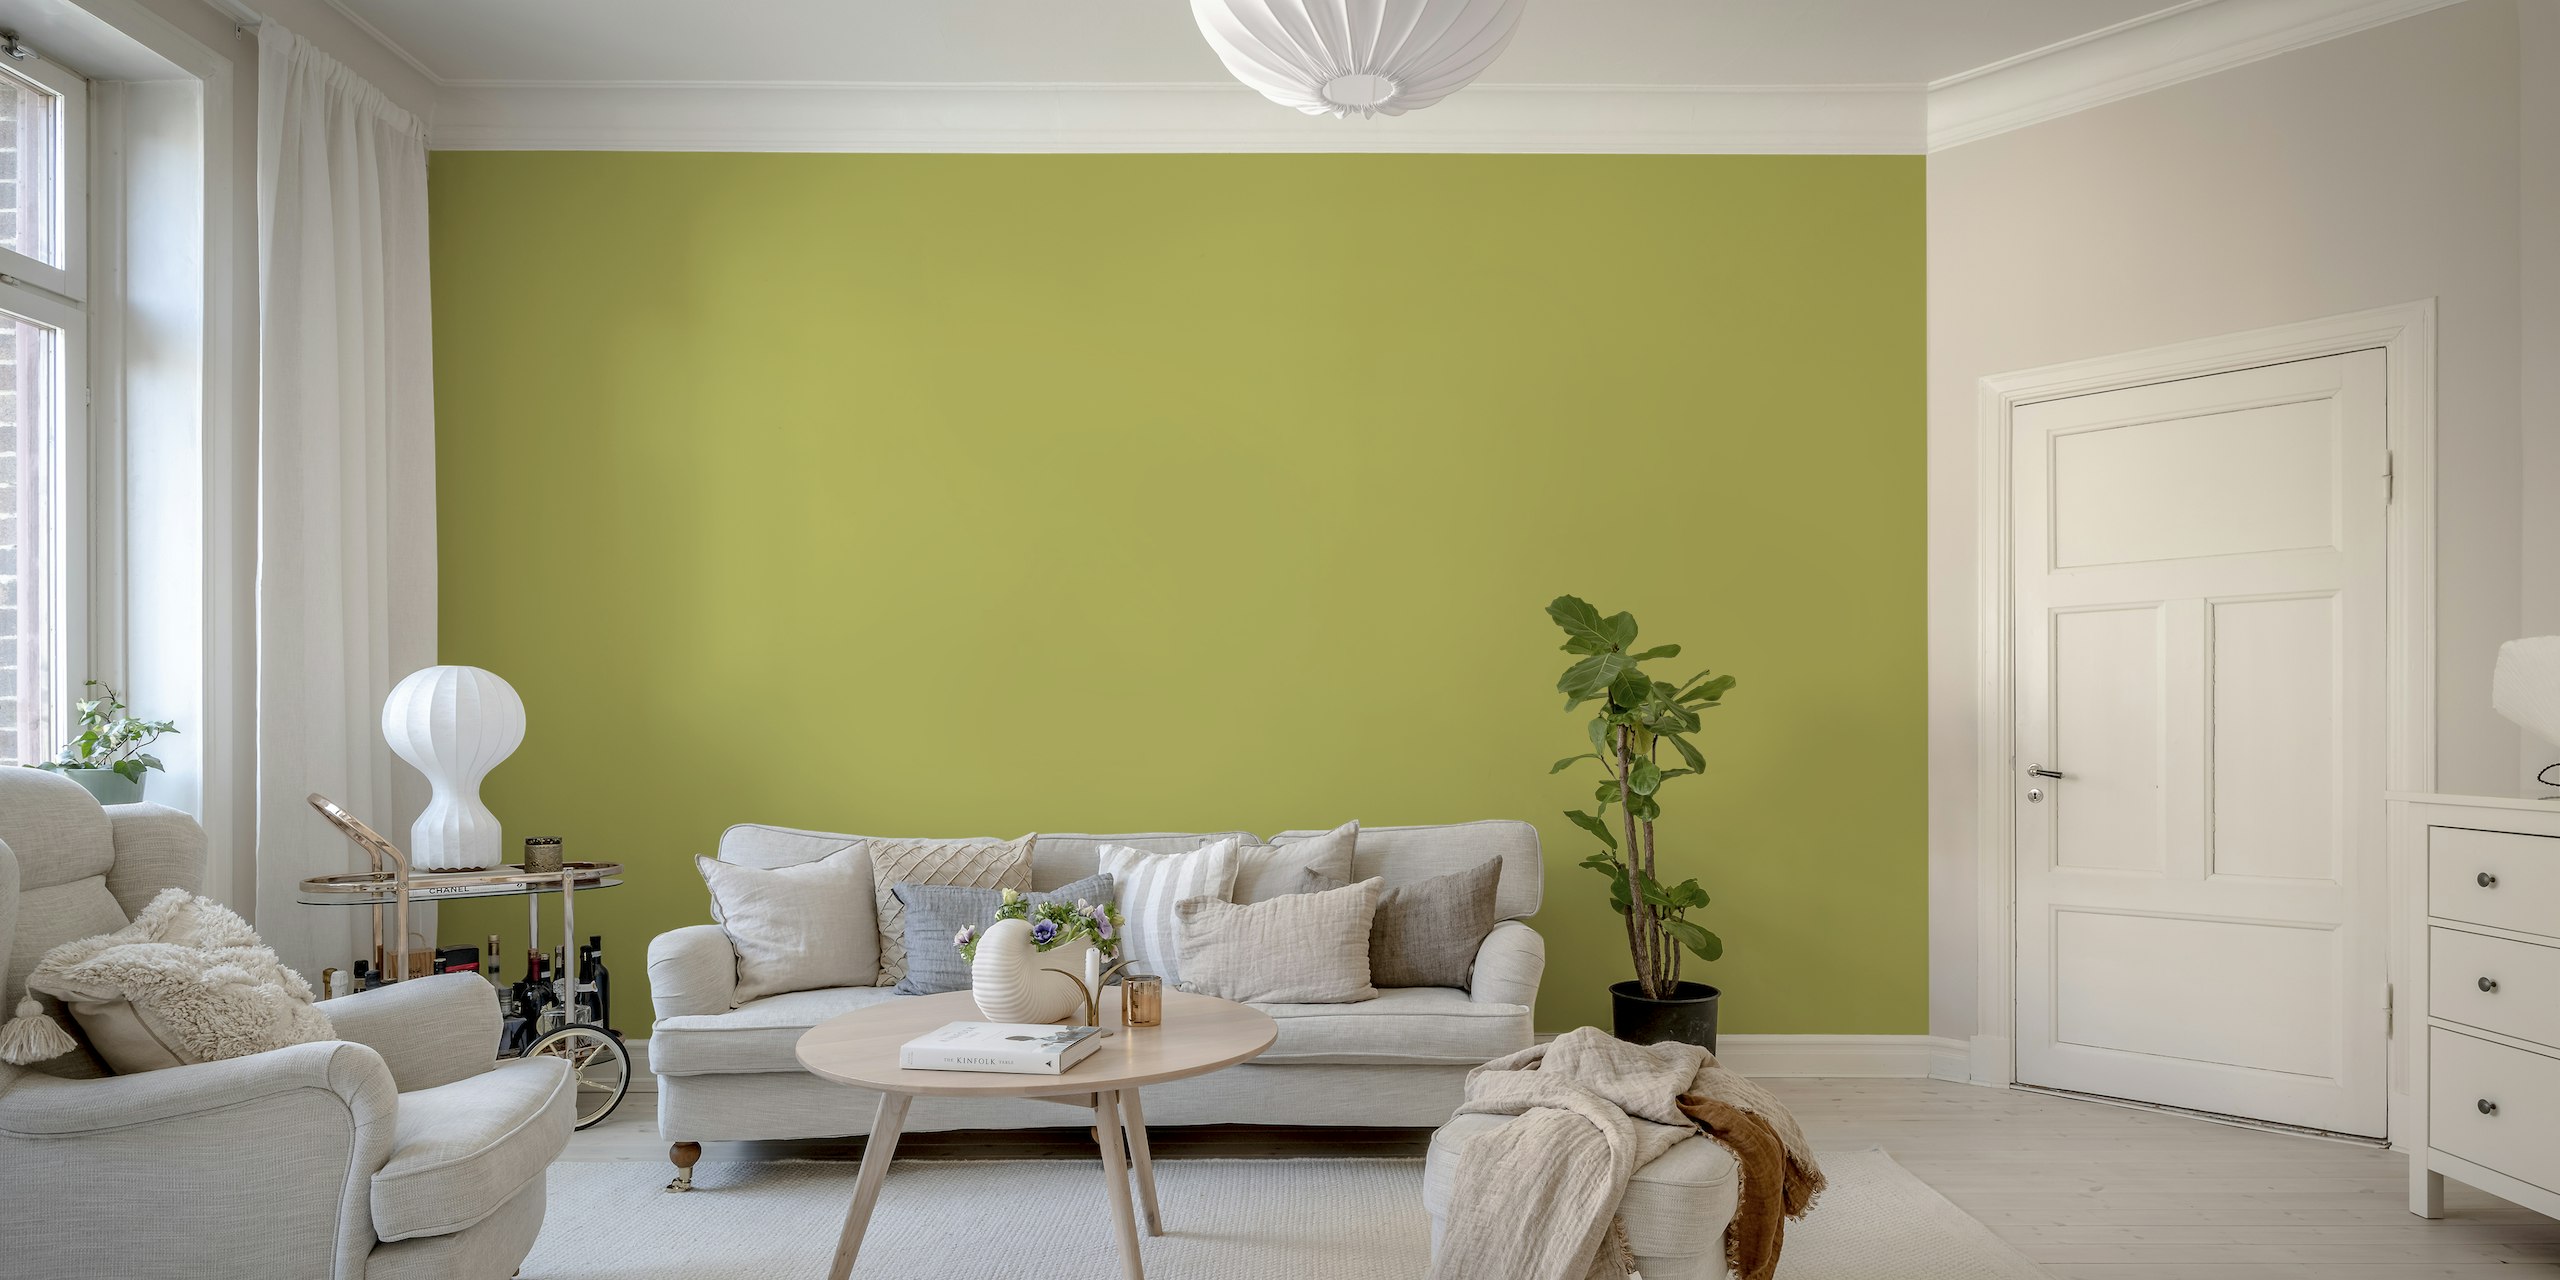 Oliivinvihreä yksivärinen seinämaalaus, joka huokuu rauhallista ja hienostunutta tunnelmaa.